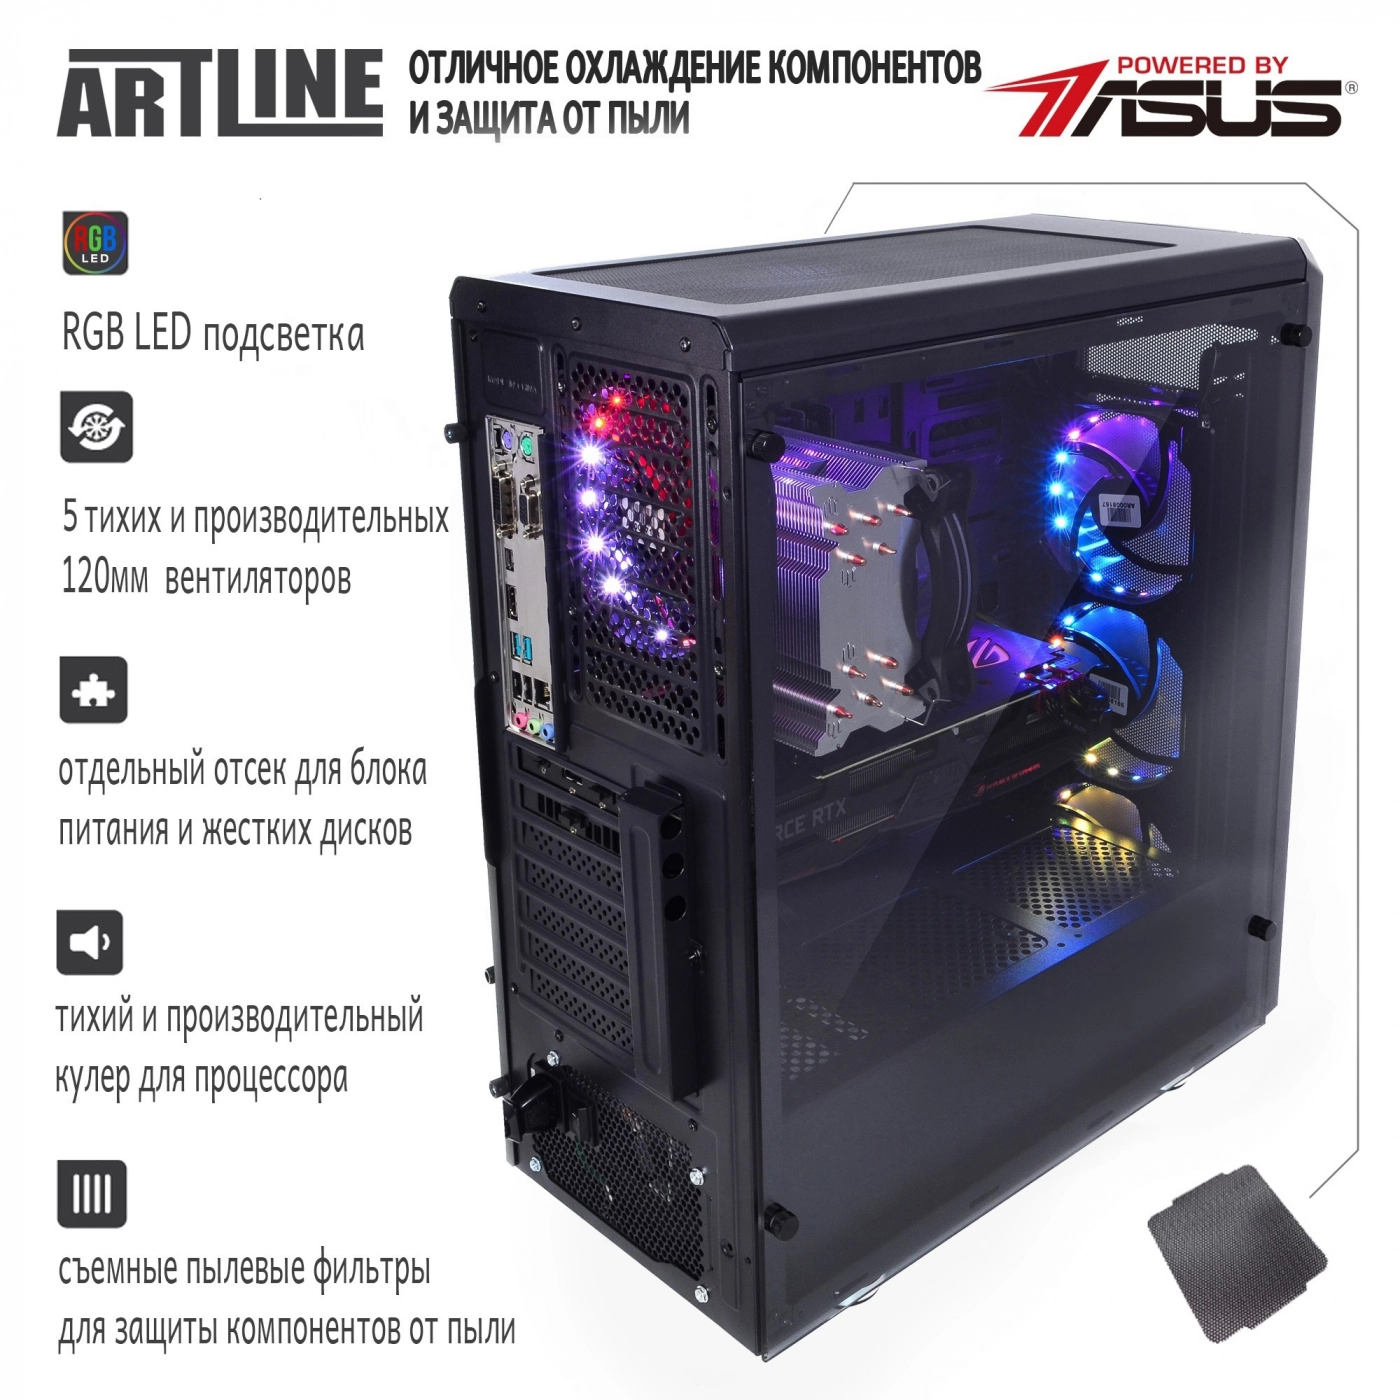 Купить Компьютер ARTLINE Gaming X99v23 - фото 3